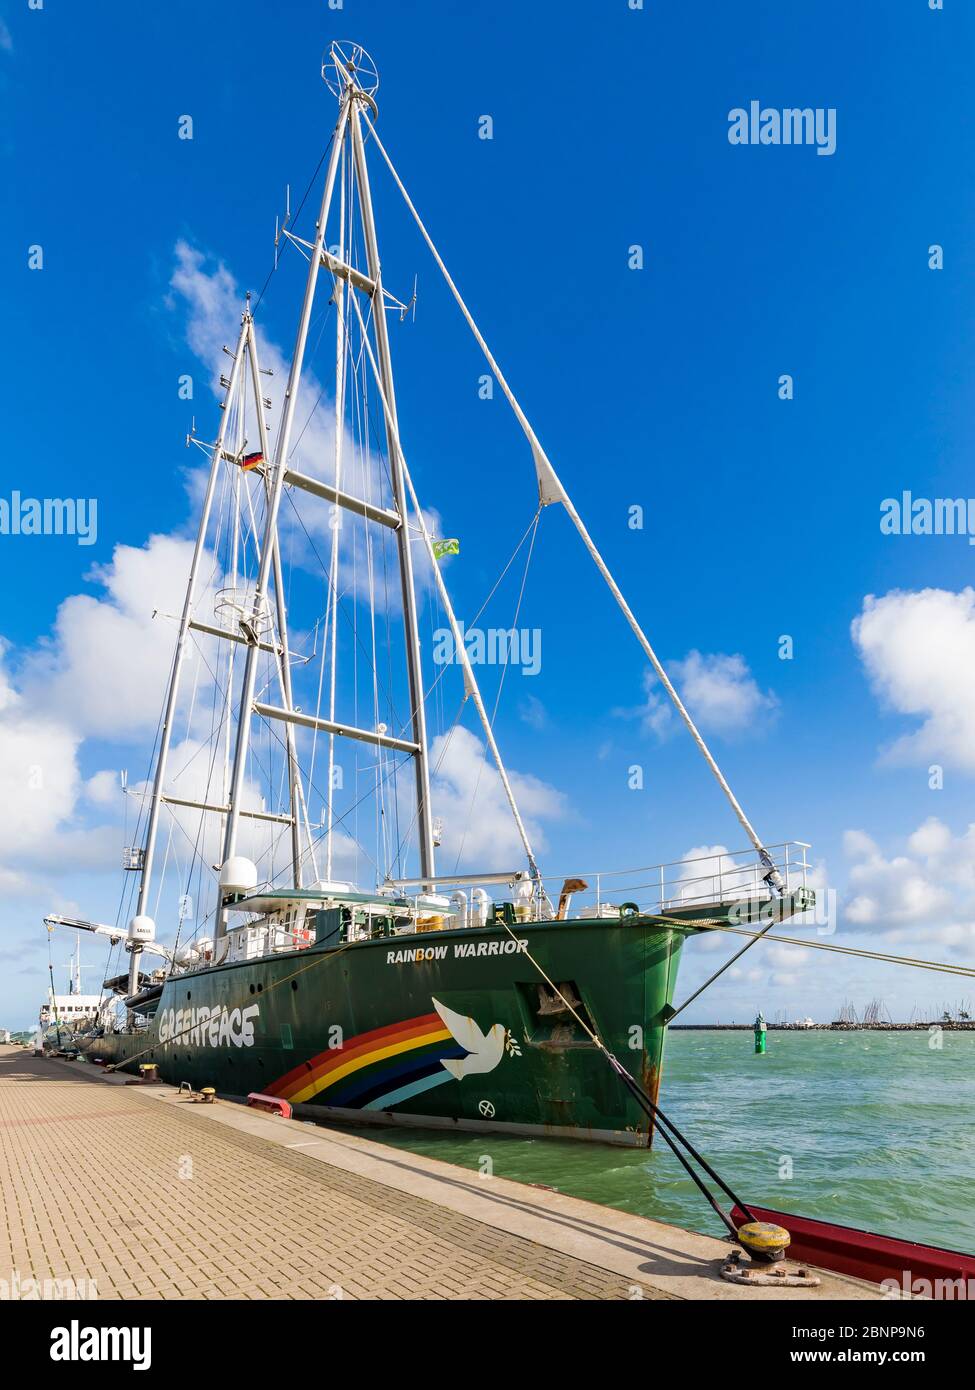 Deutschland, Mecklenburg-Vorpommern, Warnemünde, Seebad, Hafen, Rainbow Warrior III, Hightech-Motorsegelschiff, Umweltorganisation Greenpeace Stockfoto